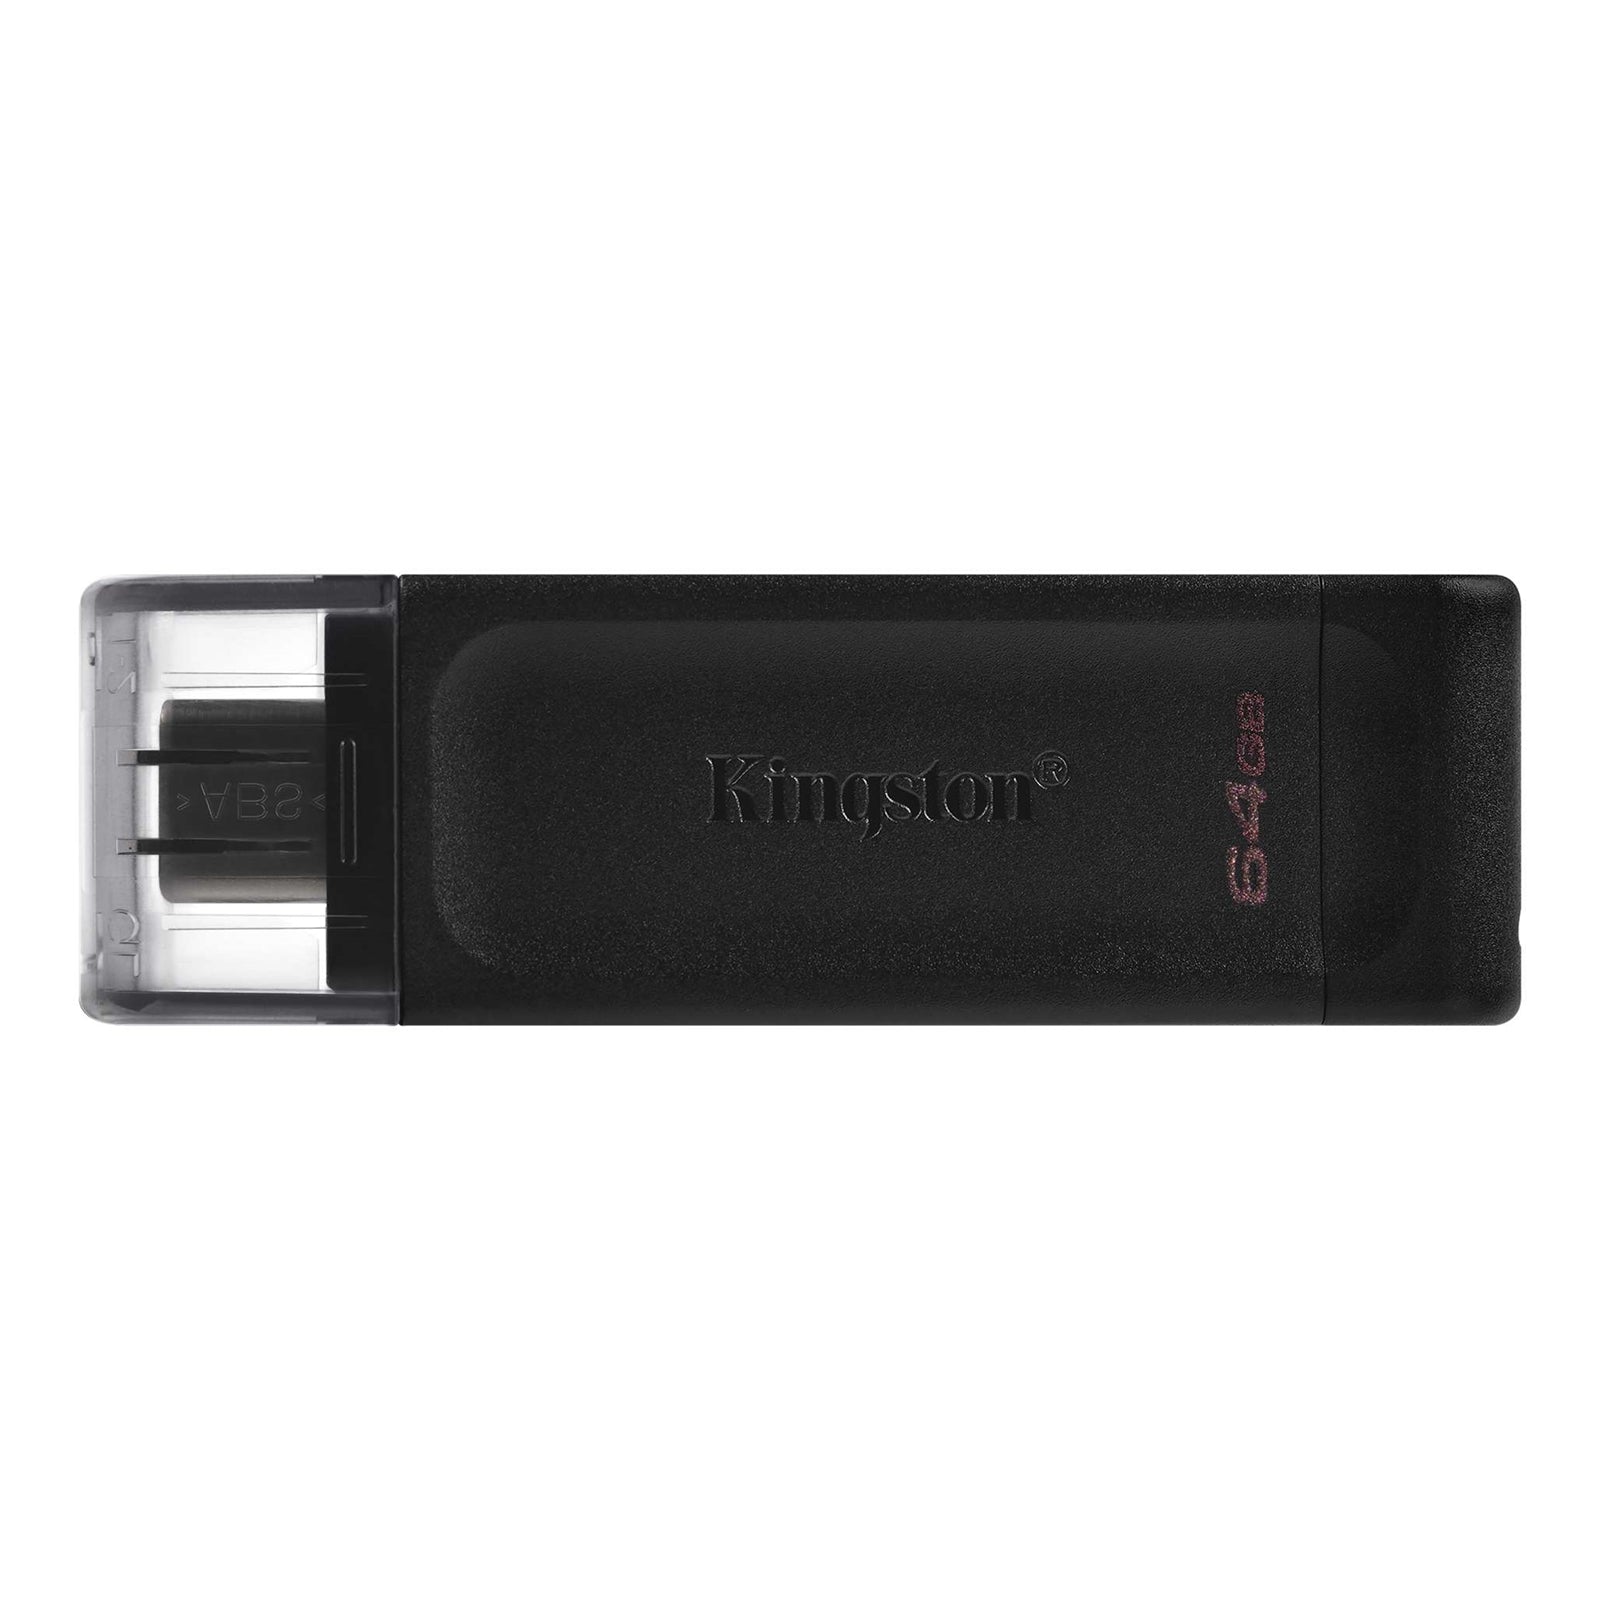 Kingston DT70 64GB USB-C Flash Drive